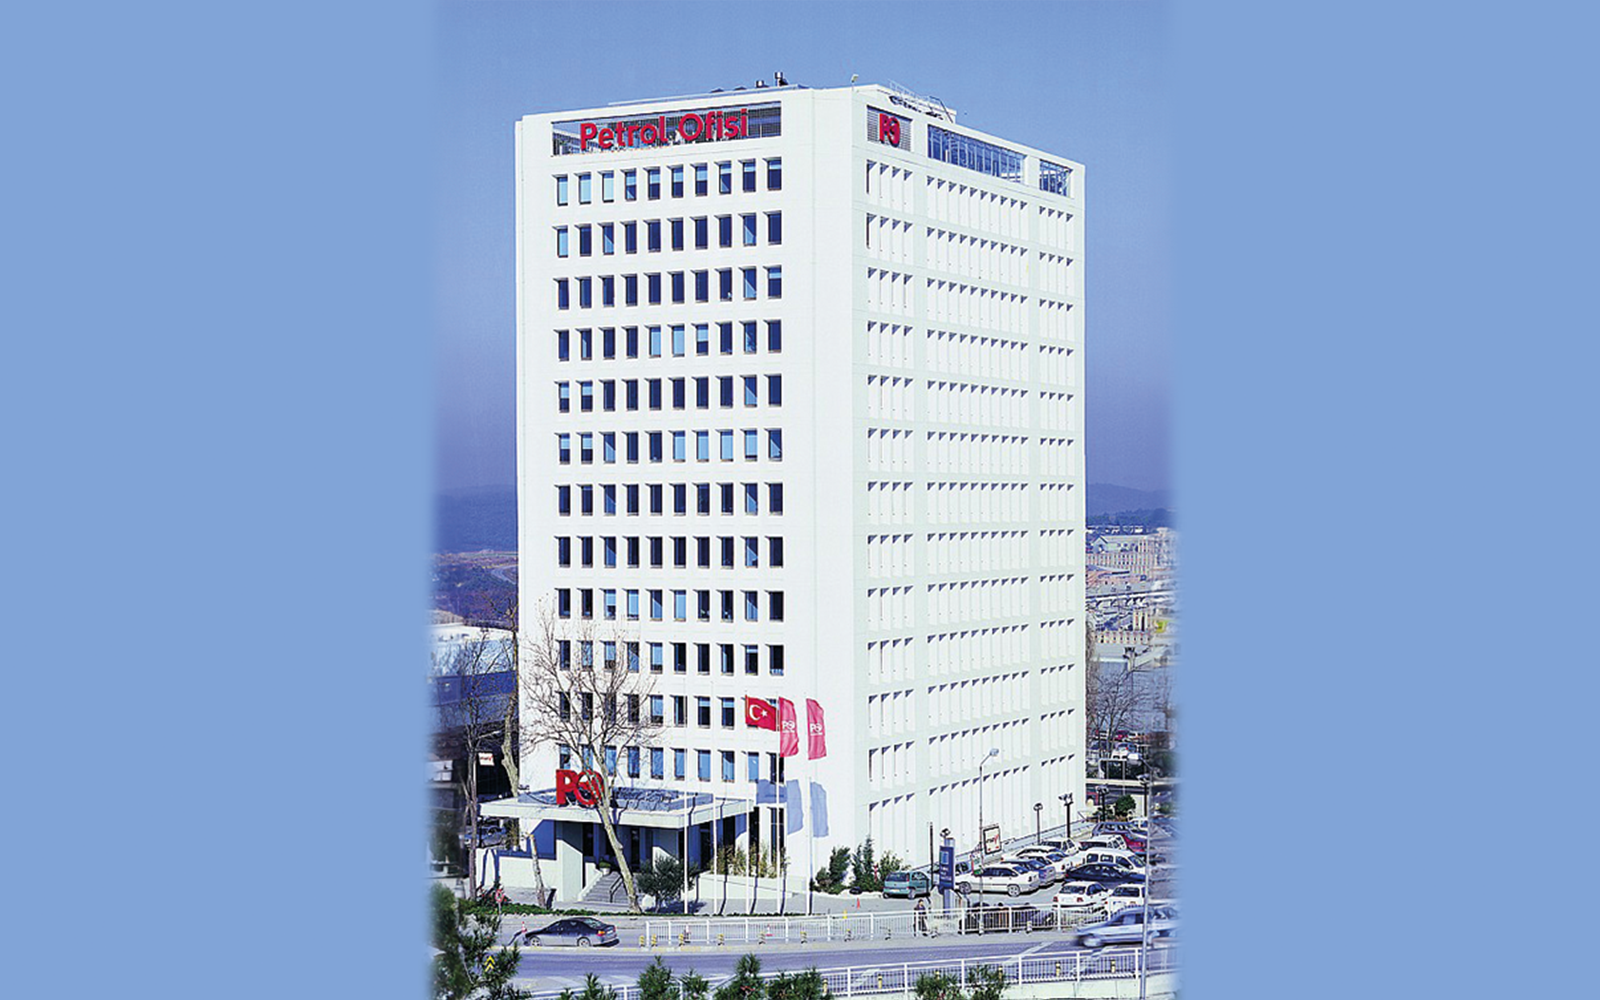 Petrol Ofis Headquarter Building